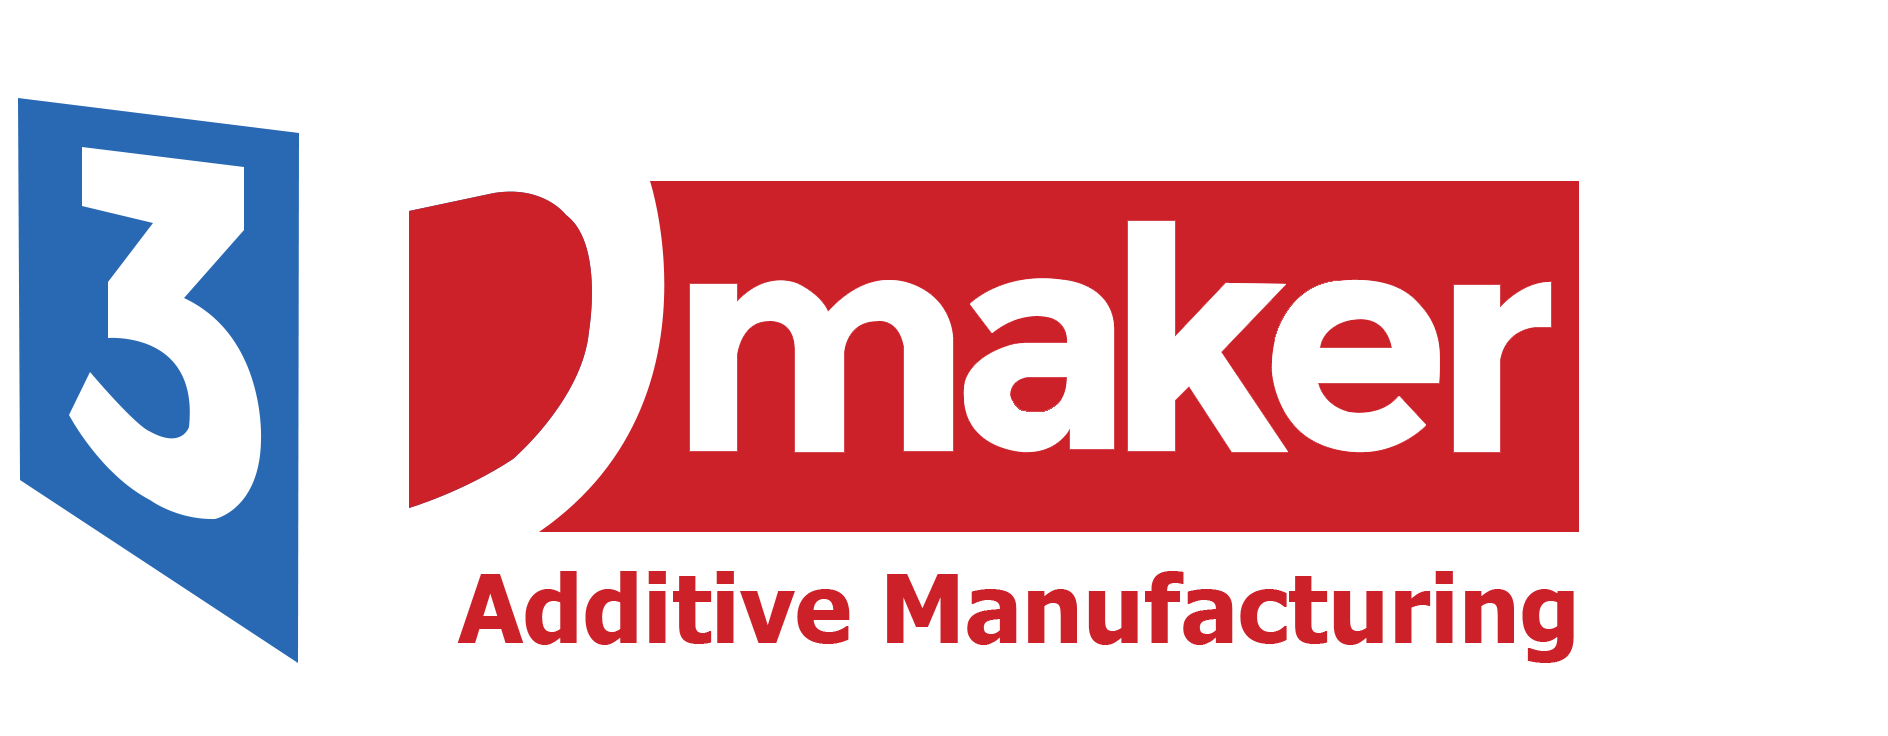 3DMaker - Thương hiệu tiên phong trong lĩnh vực máy in 3D từ 2014